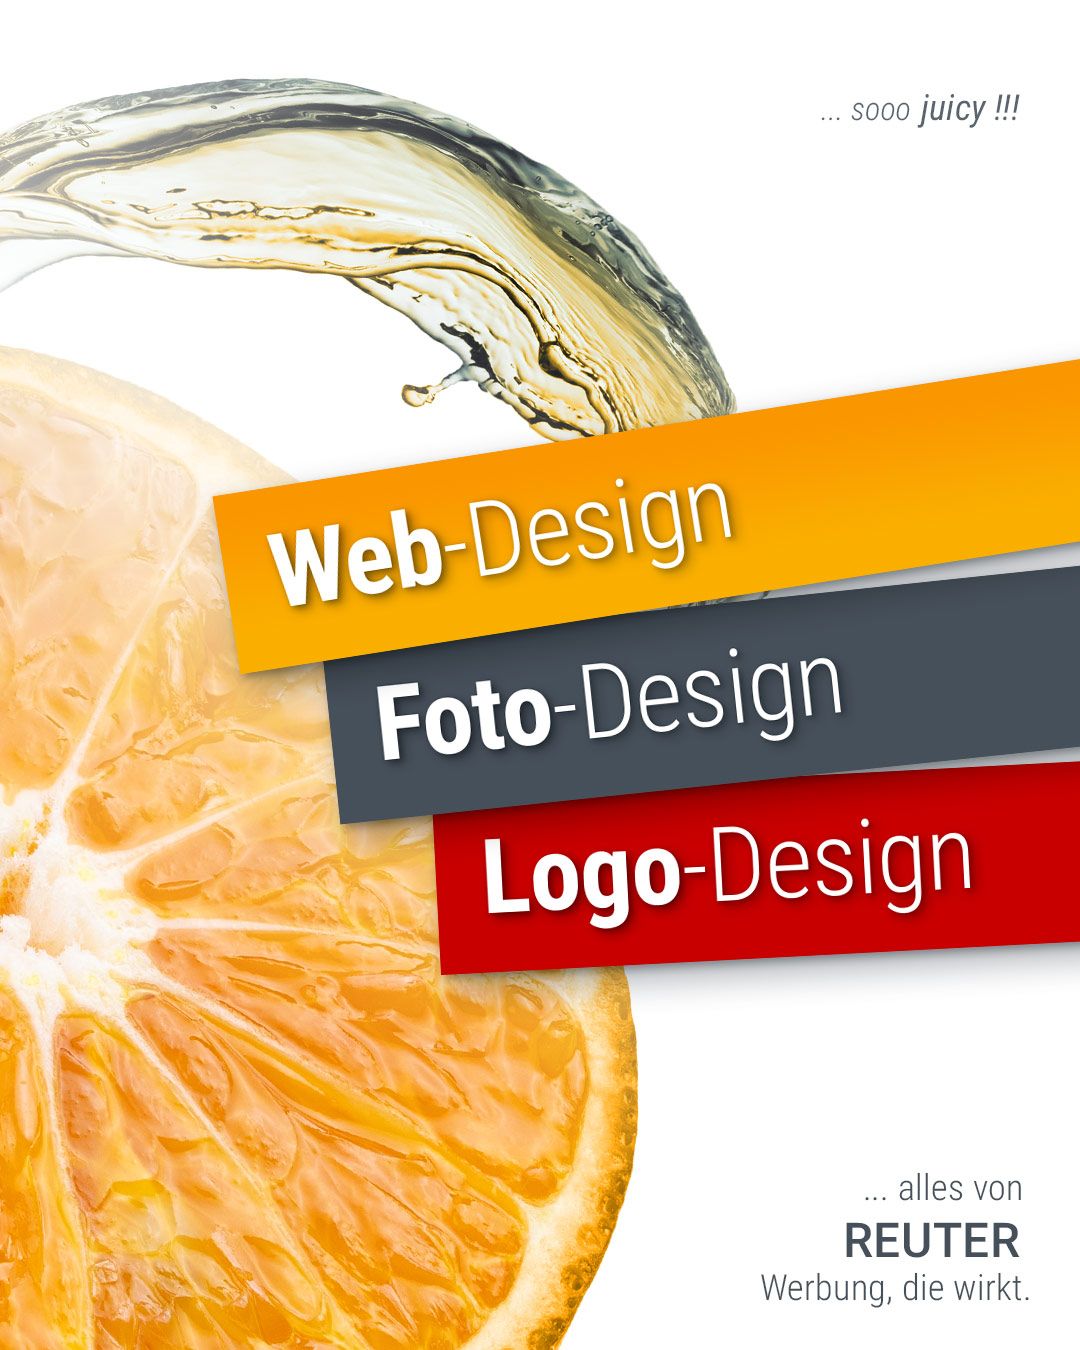 Foto: Leistungen Teil 1: Web-Design, Foto-Design & Logo-Design von REUTER - Werbung, die wirkt.